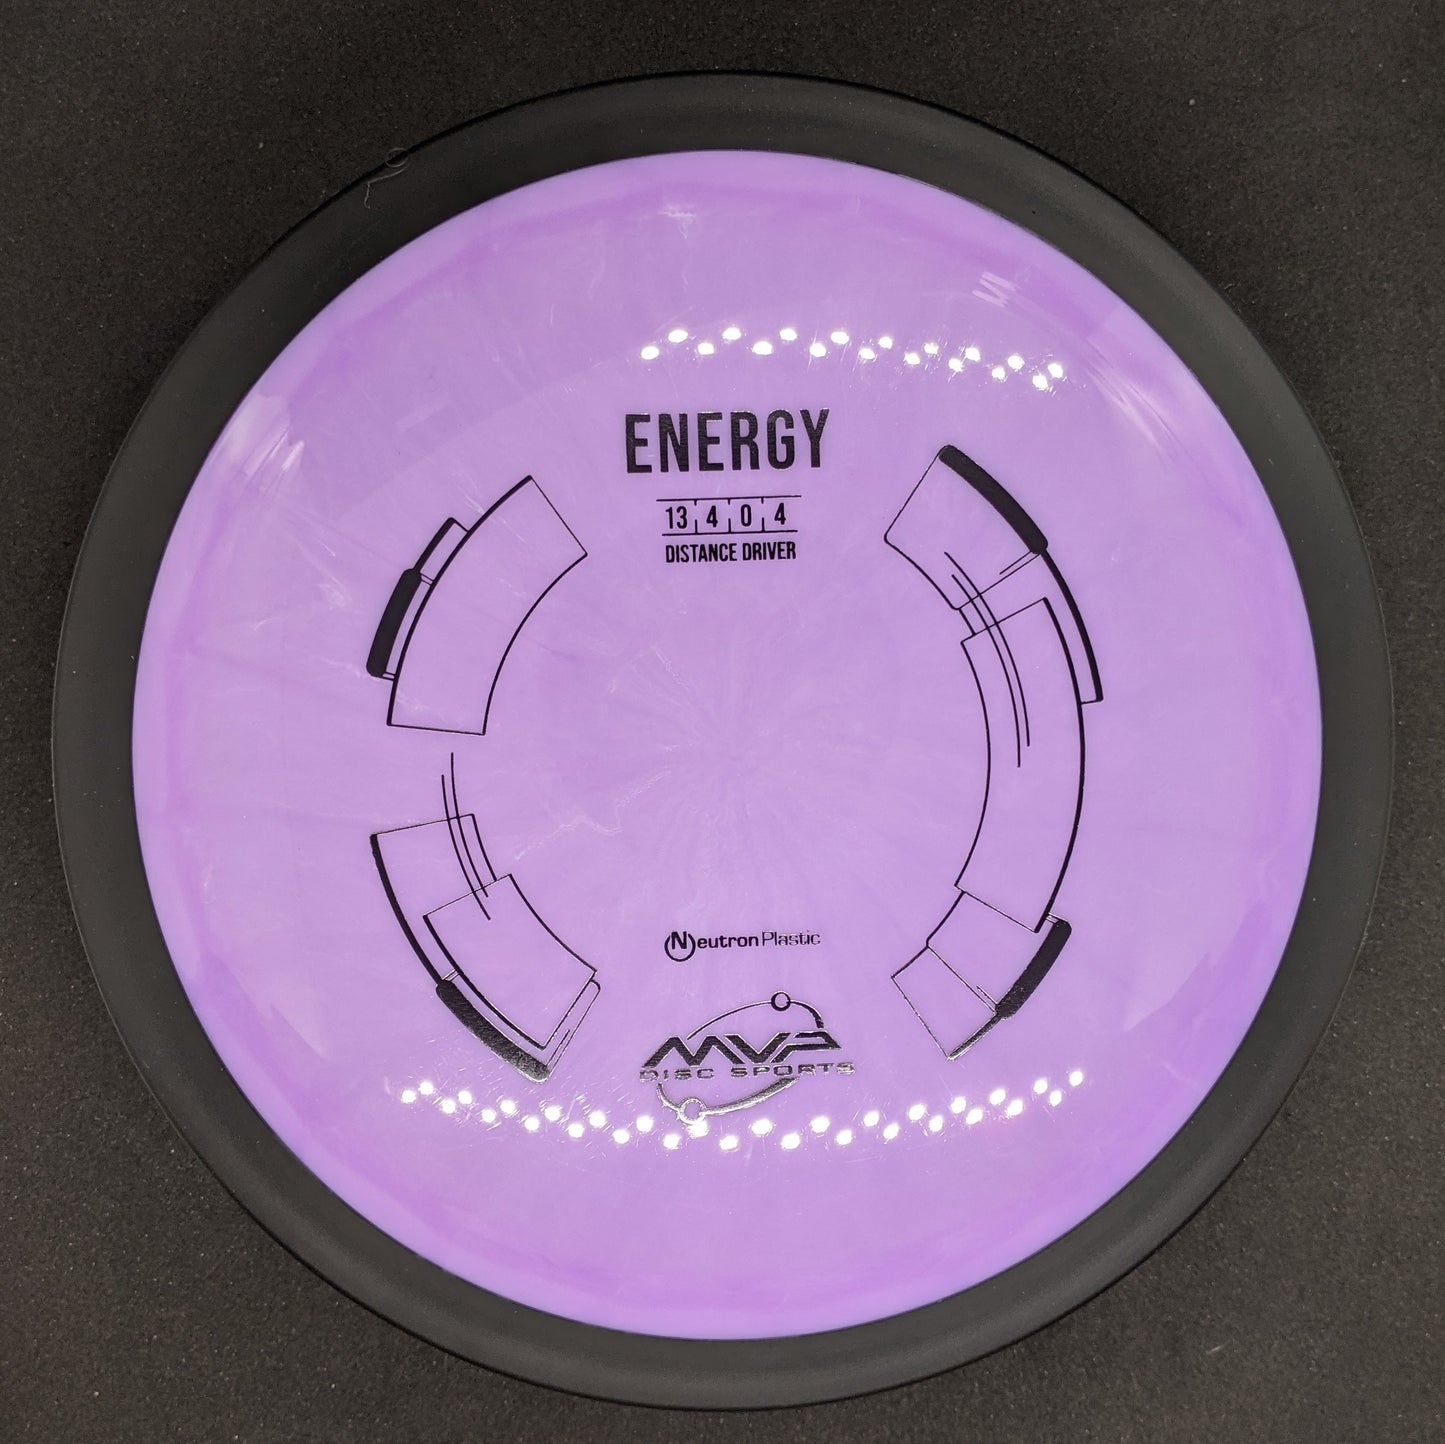 MVP - Energy - Neutron